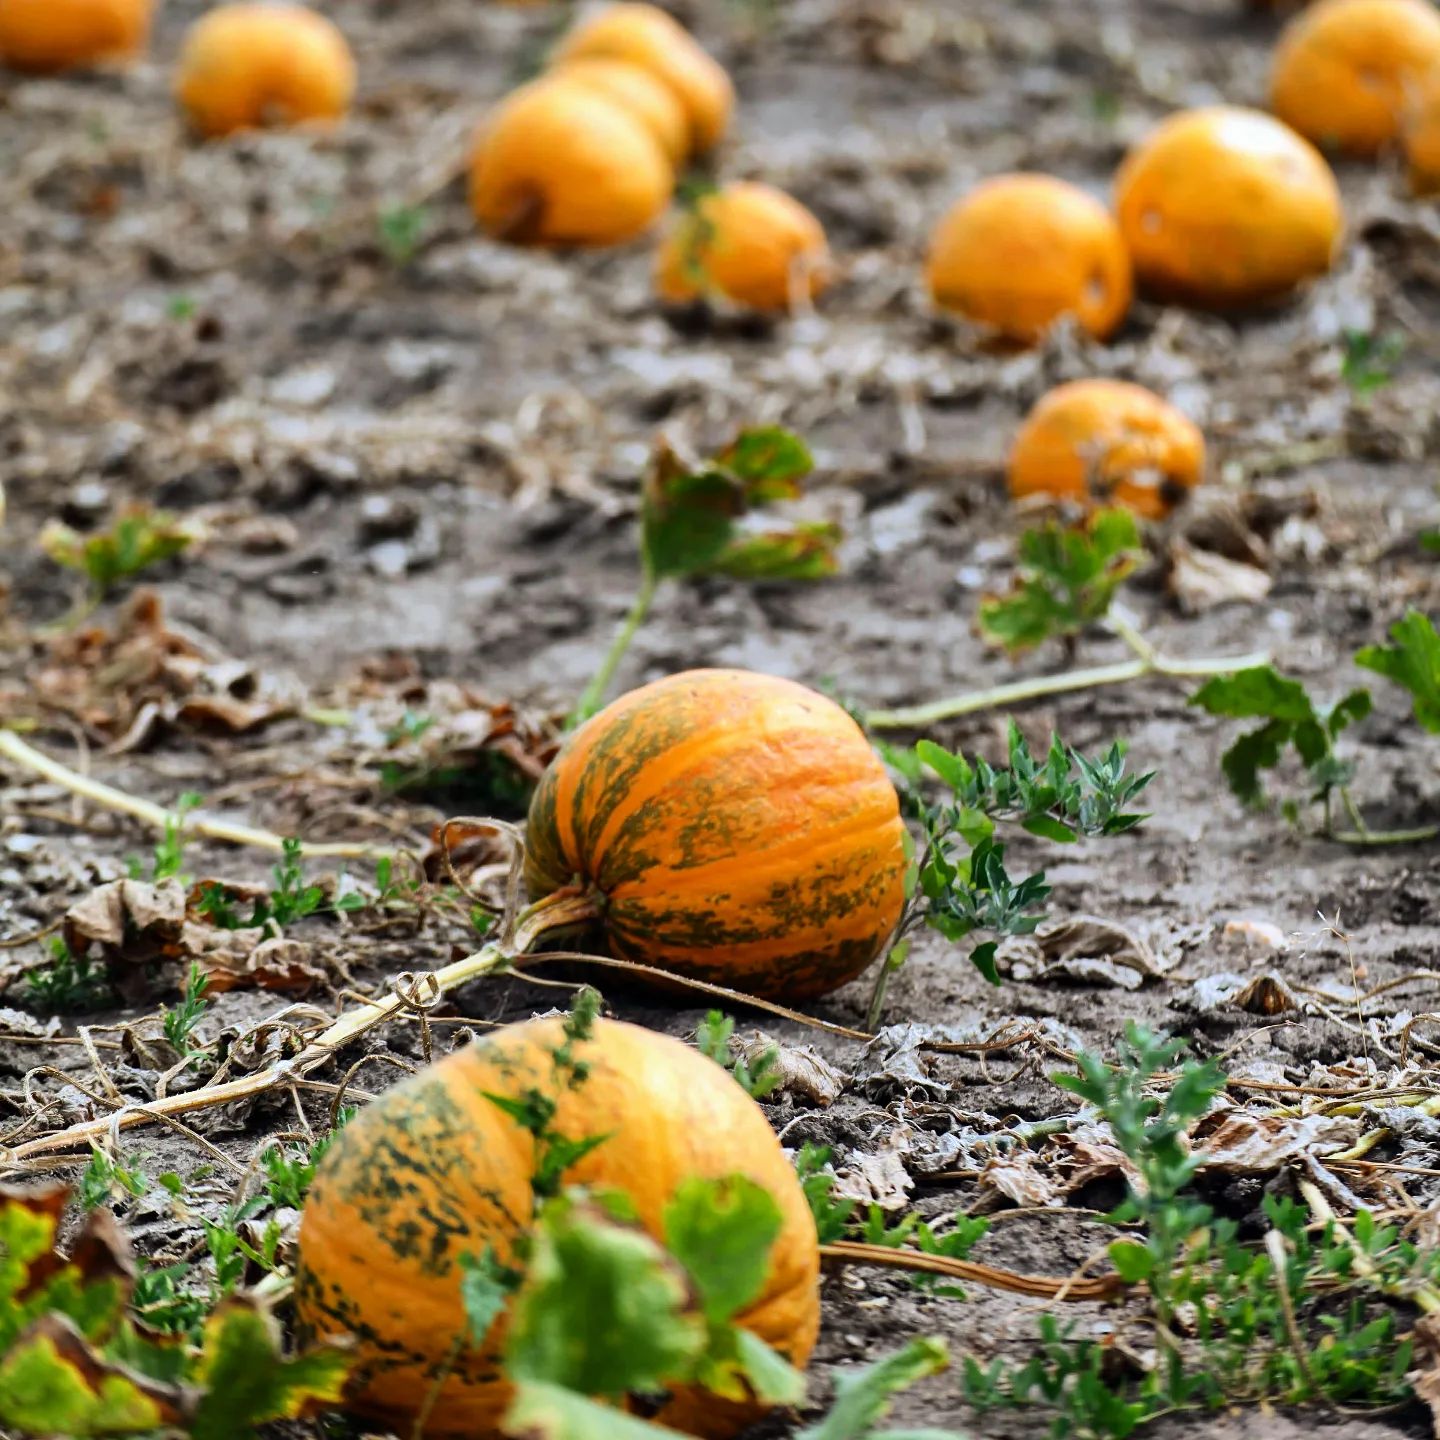 The #pumpkinseason has come!
#pumpkin #pumpkins #pumpkinfield #pumpkingrowing #dynie #dynia #poledyniowe #uprawadyni #kürbis #kürbiszeit #kürbisfeld